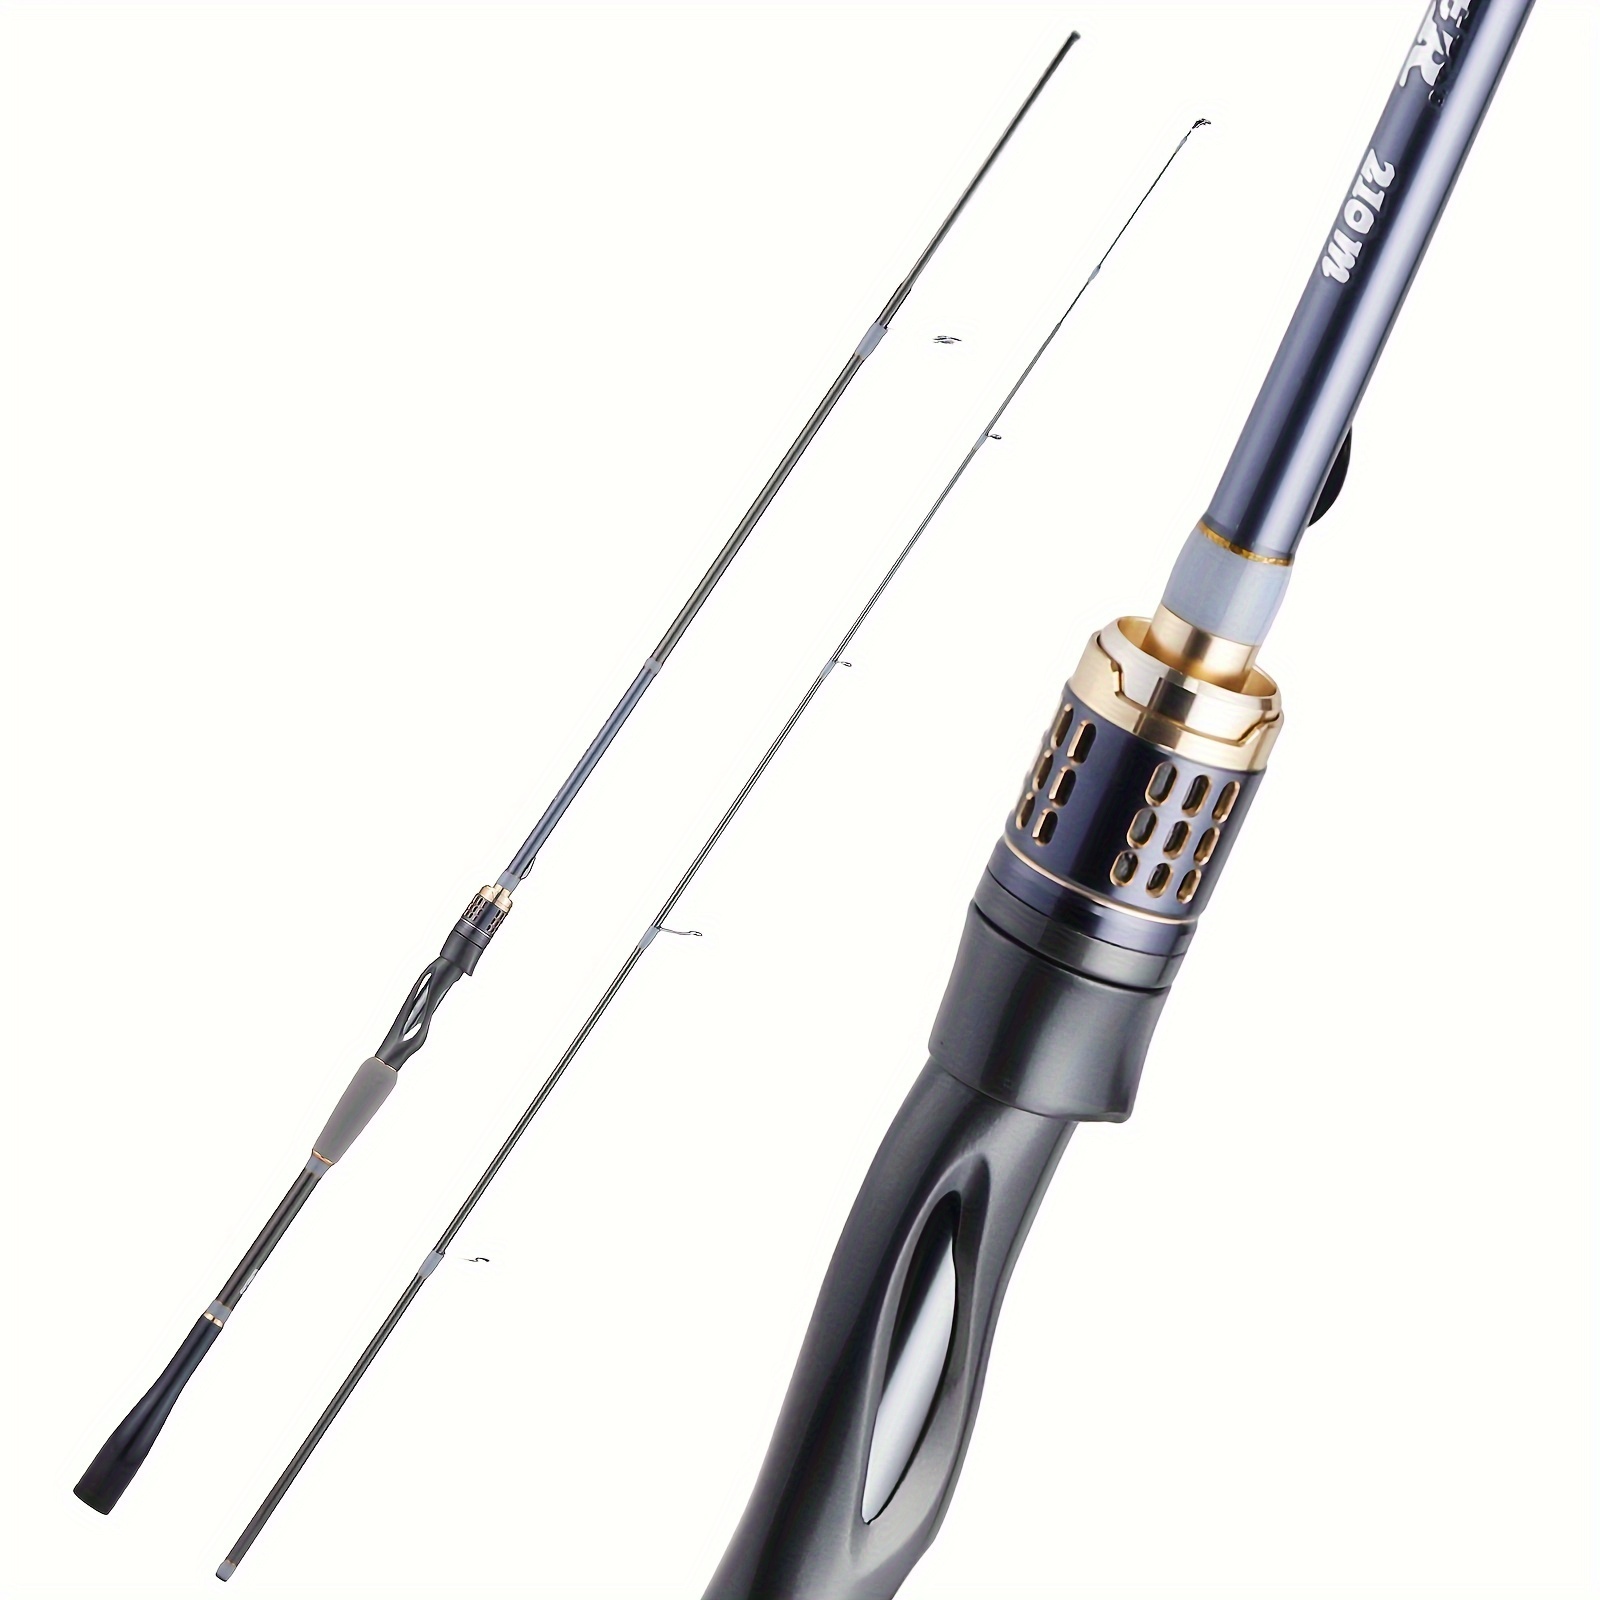 Carbon Fiber Fishing Pole, Carbon Fiber Fishing Rod